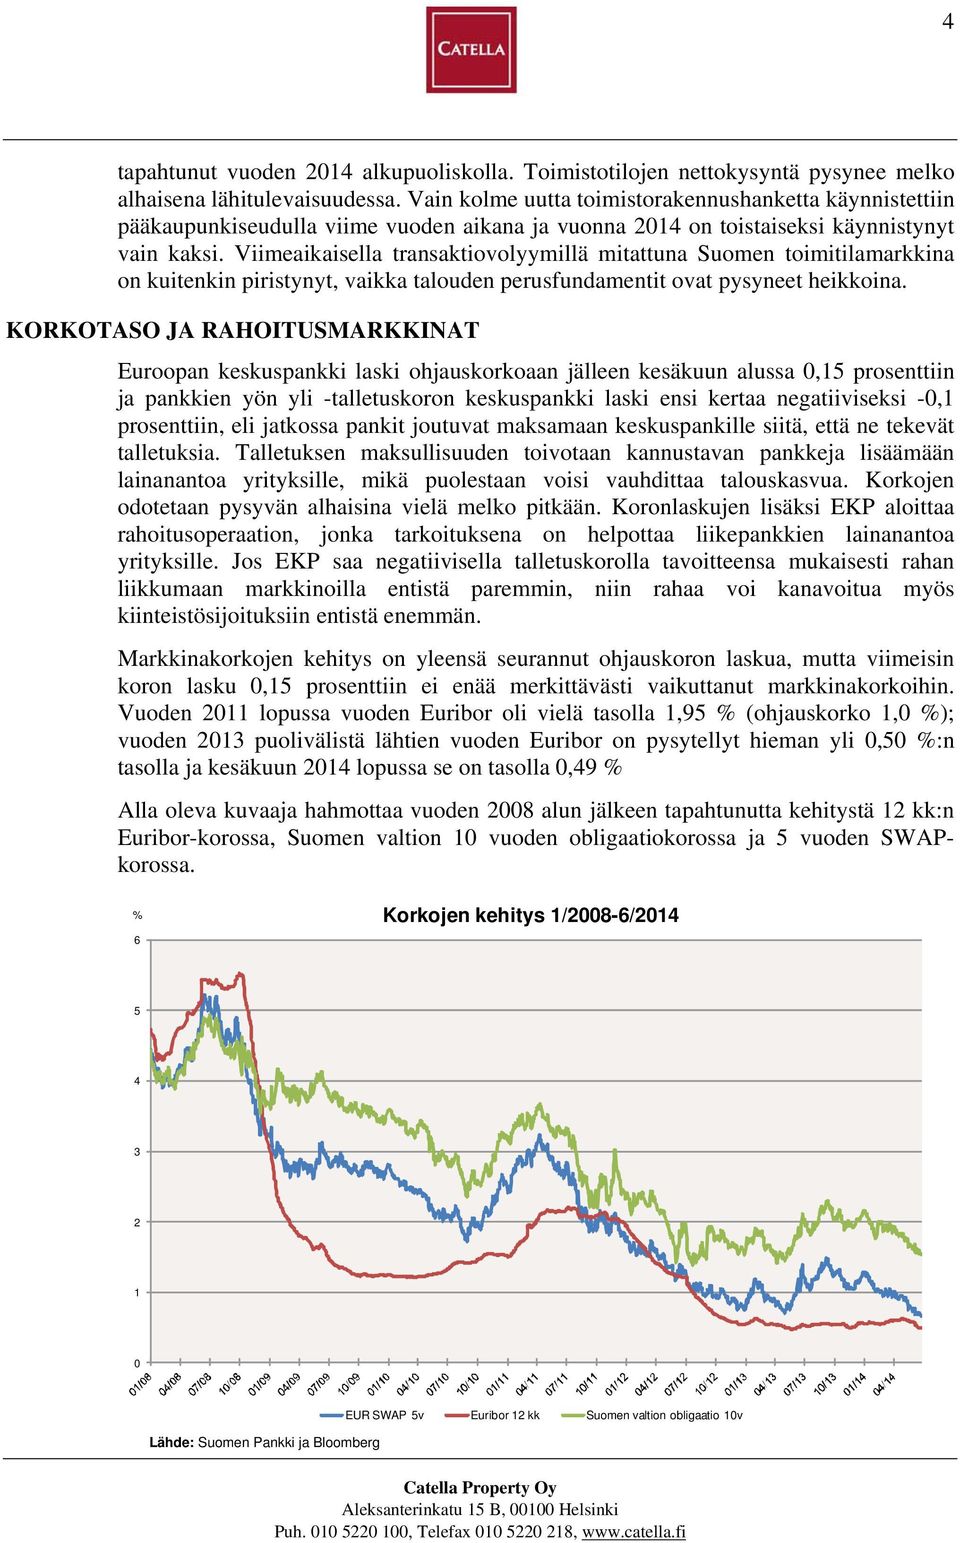 Viimeaikaisella transaktiovolyymillä mitattuna Suomen toimitilamarkkina on kuitenkin piristynyt, vaikka talouden perusfundamentit ovat pysyneet heikkoina.